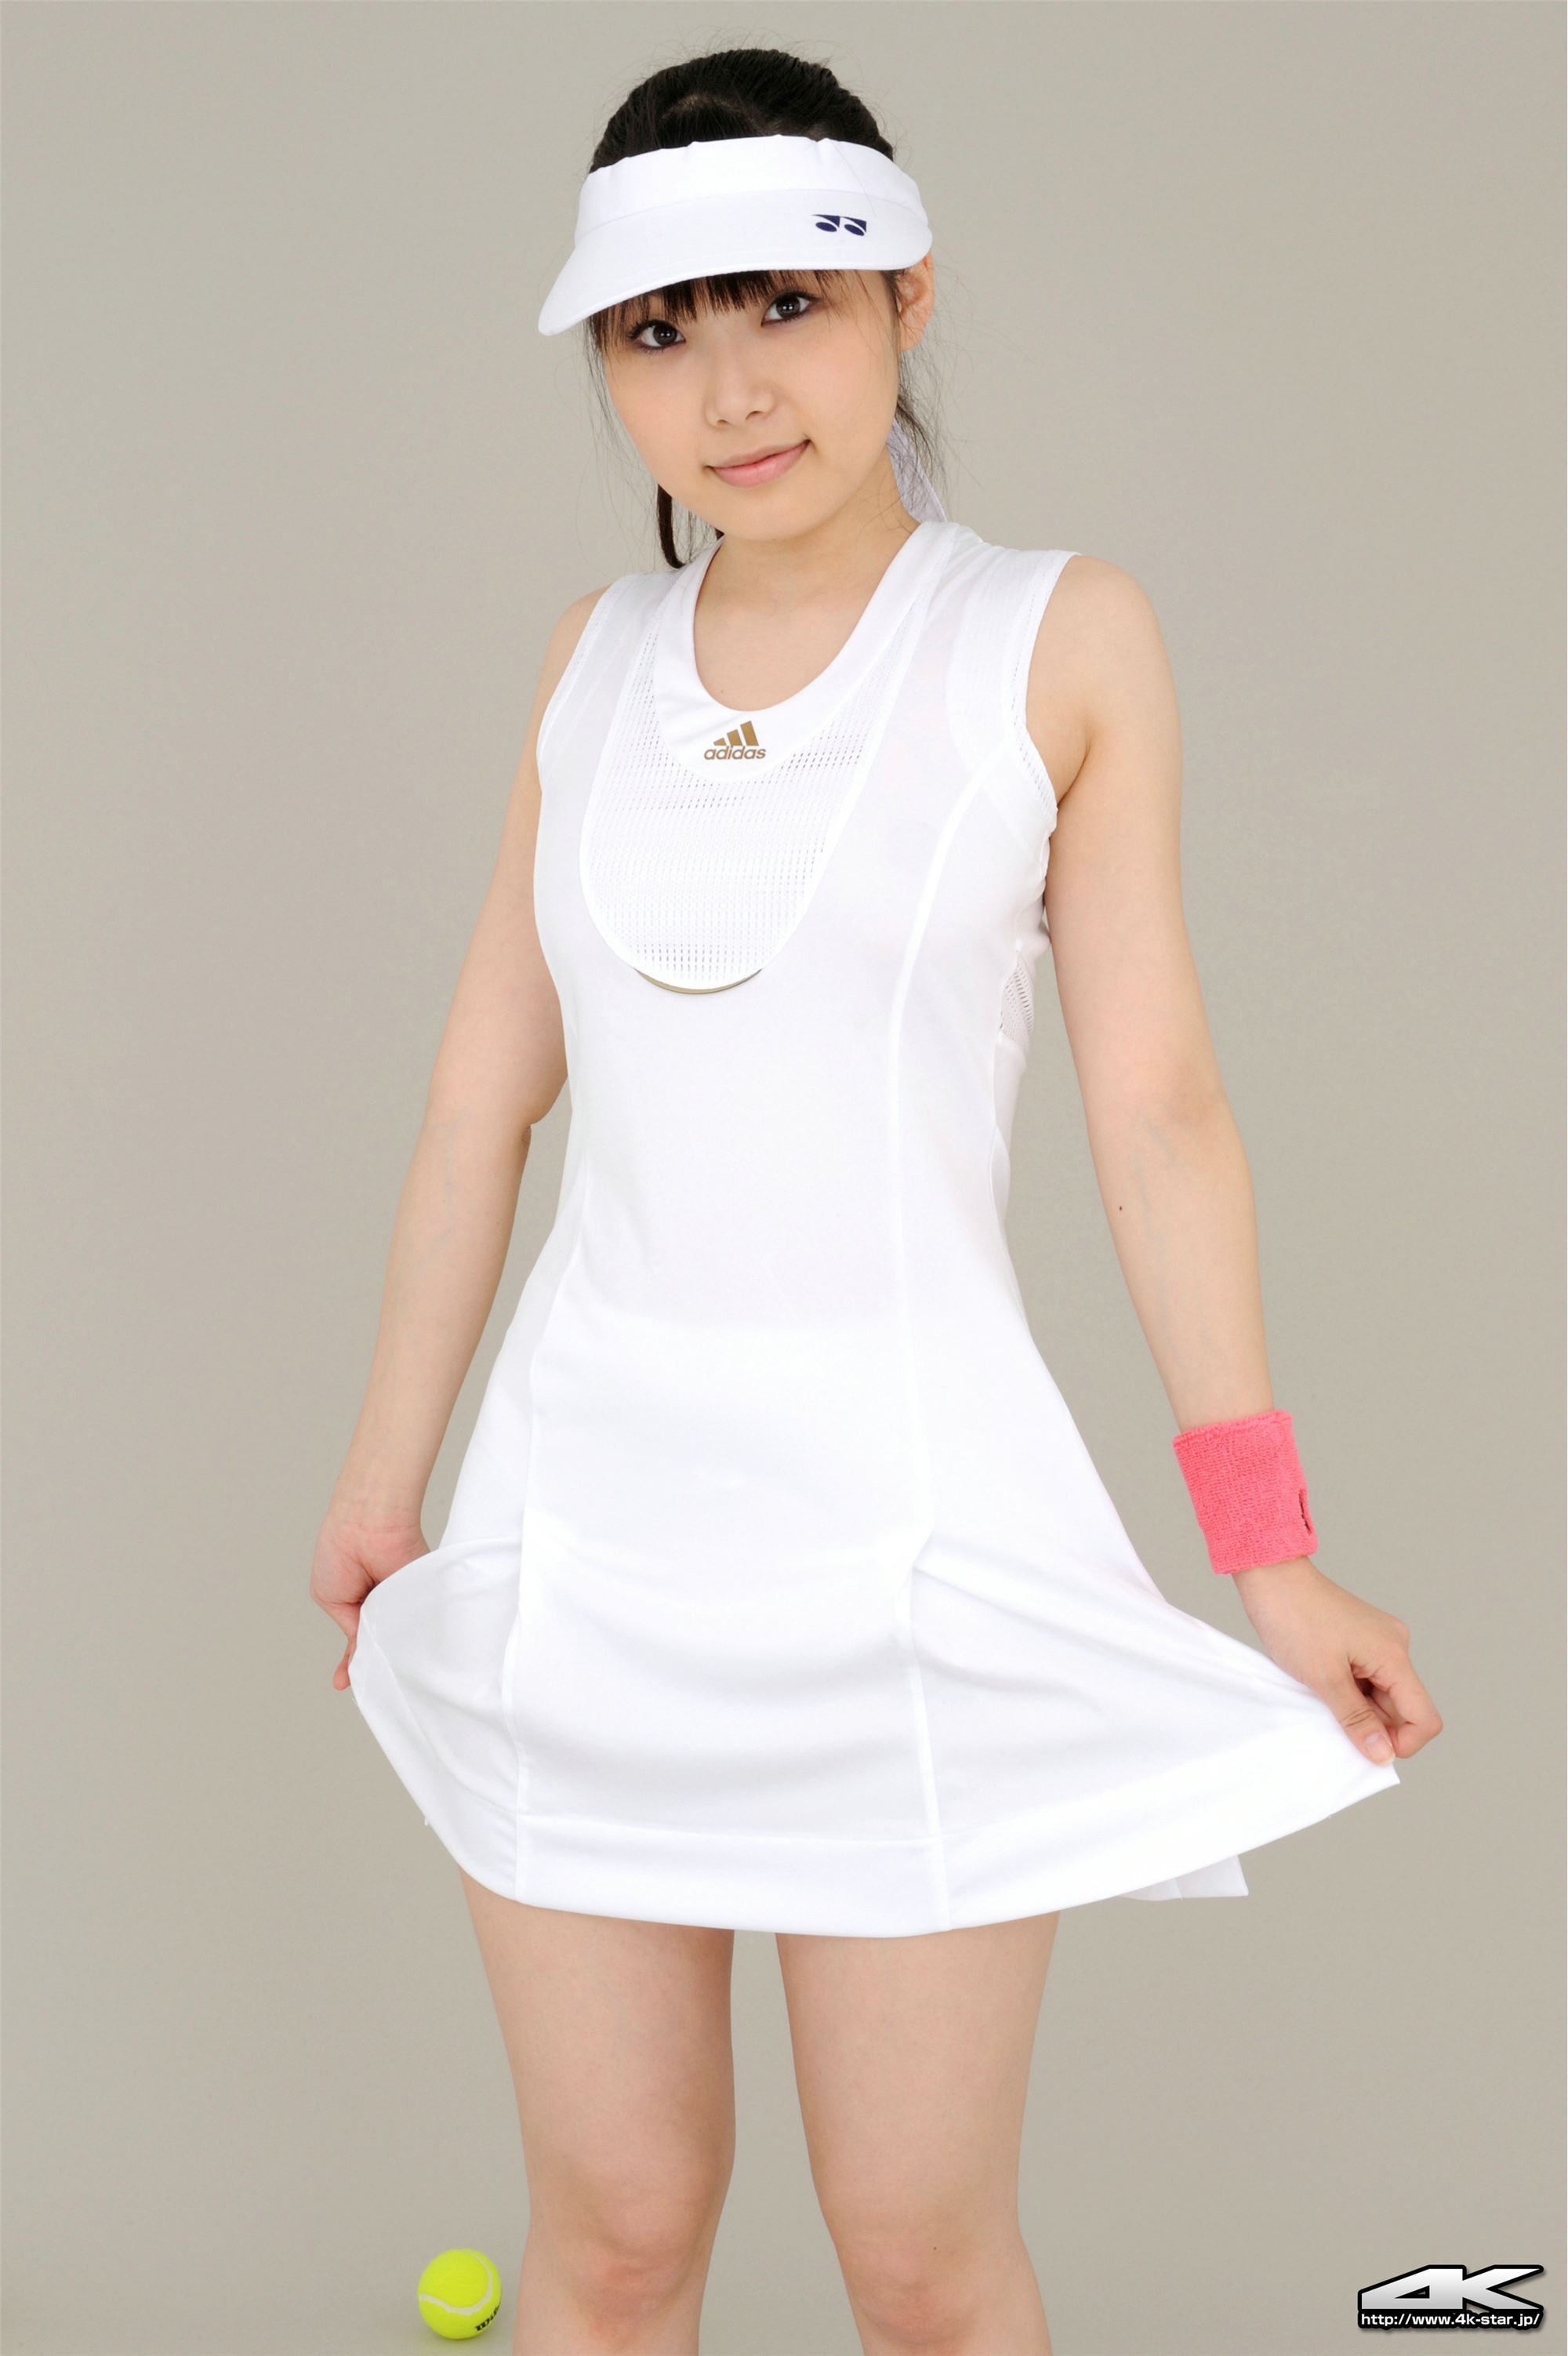 No. 486 Aska Karuizawa Tennis Club 2 